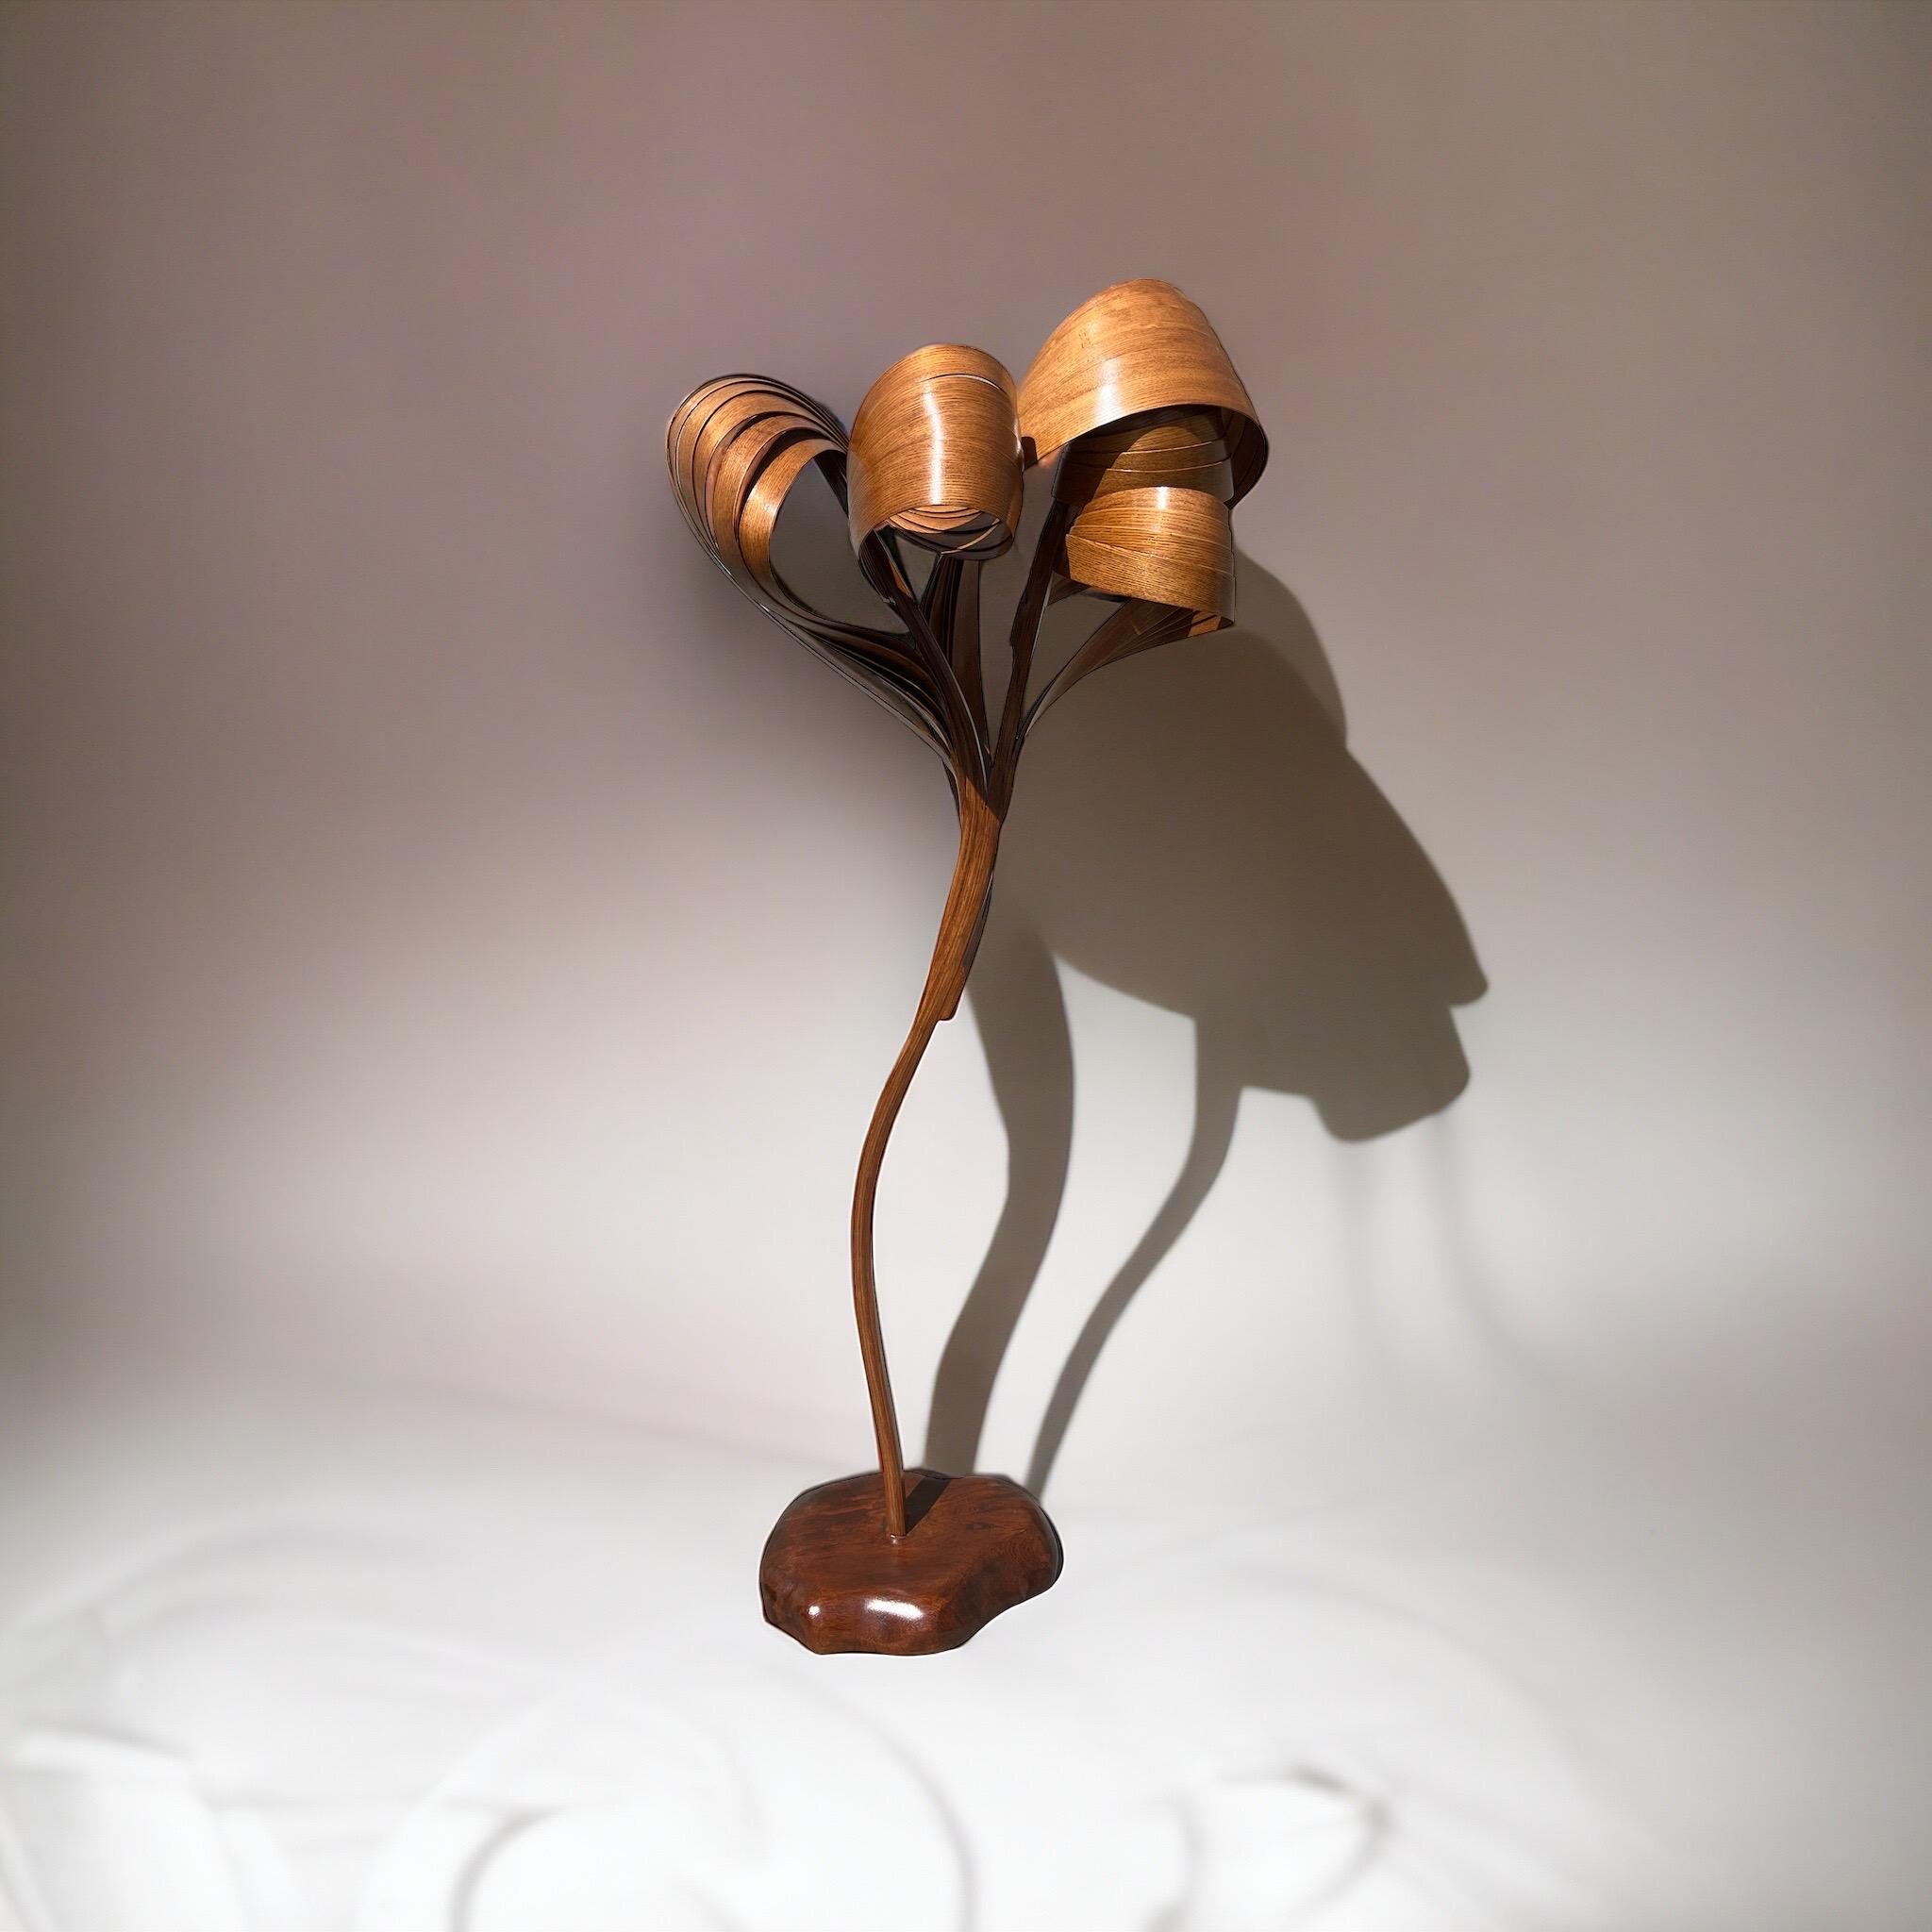 Ce lampadaire sculptural fait partie de la série Vrksa et tire son inspiration de la ligne d'œuvres The Forms. La pièce démontre le flux du bois, l'émergence et la réduction du bois ; un ensemble complexe de bandes de bois pliées pour créer des